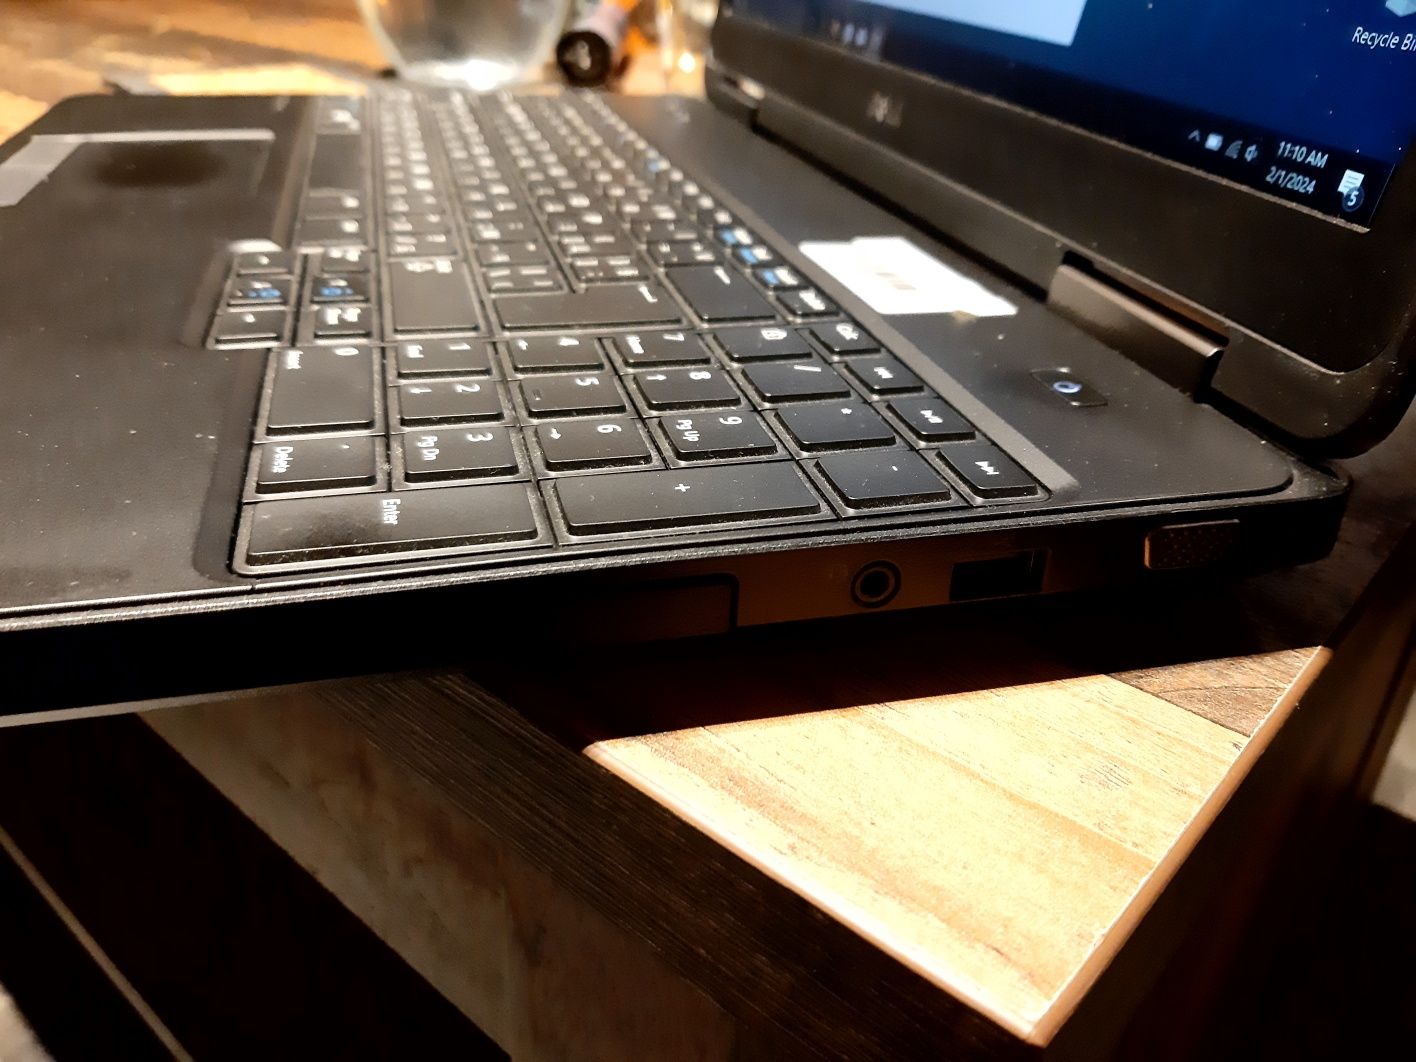 15" Лаптоп Dell Latitude E5540